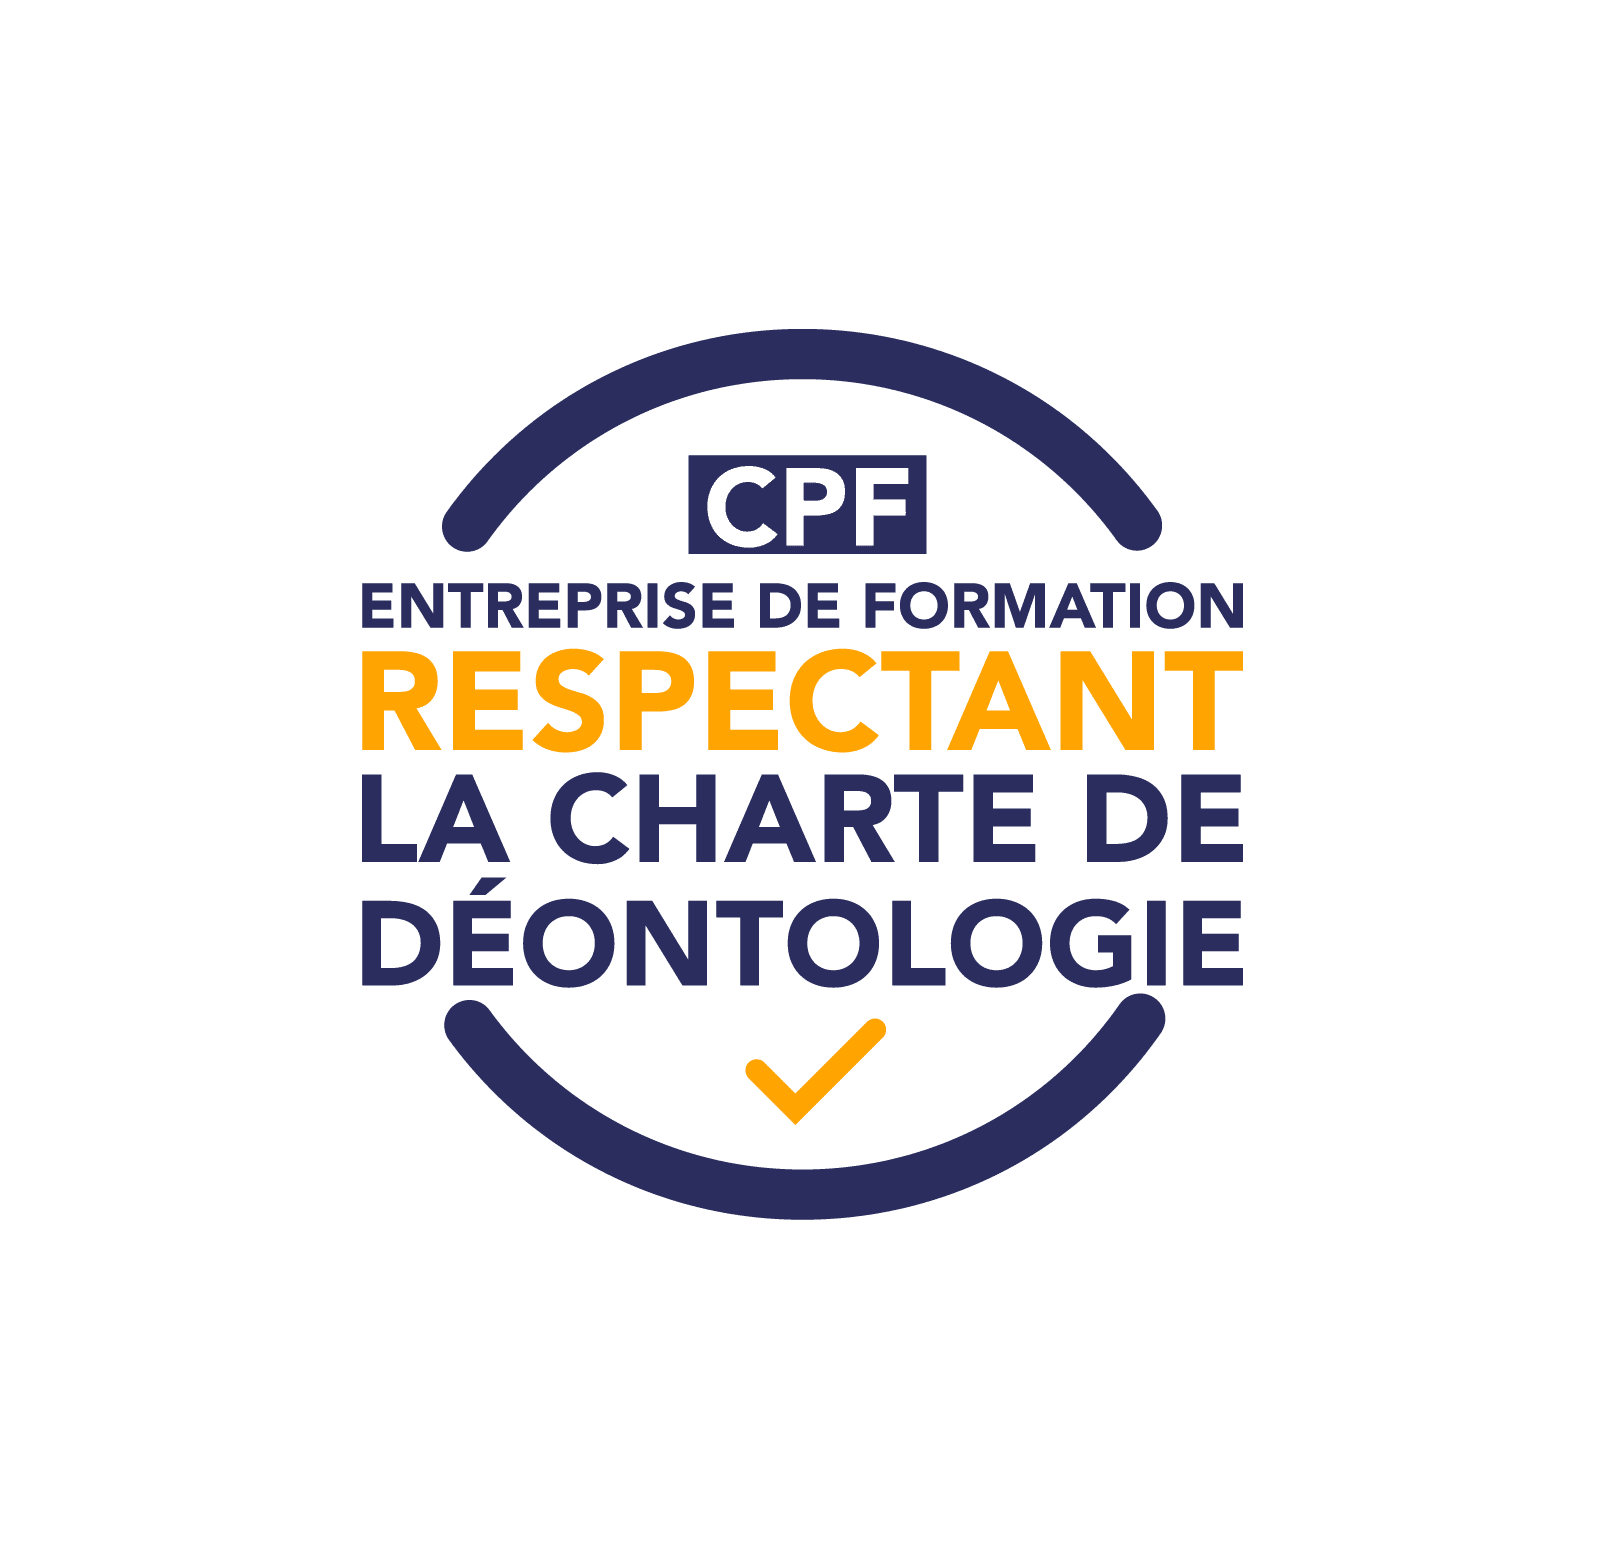 Featured image for “100% de réussite au DELF B1 et Charte déontologique CPF”